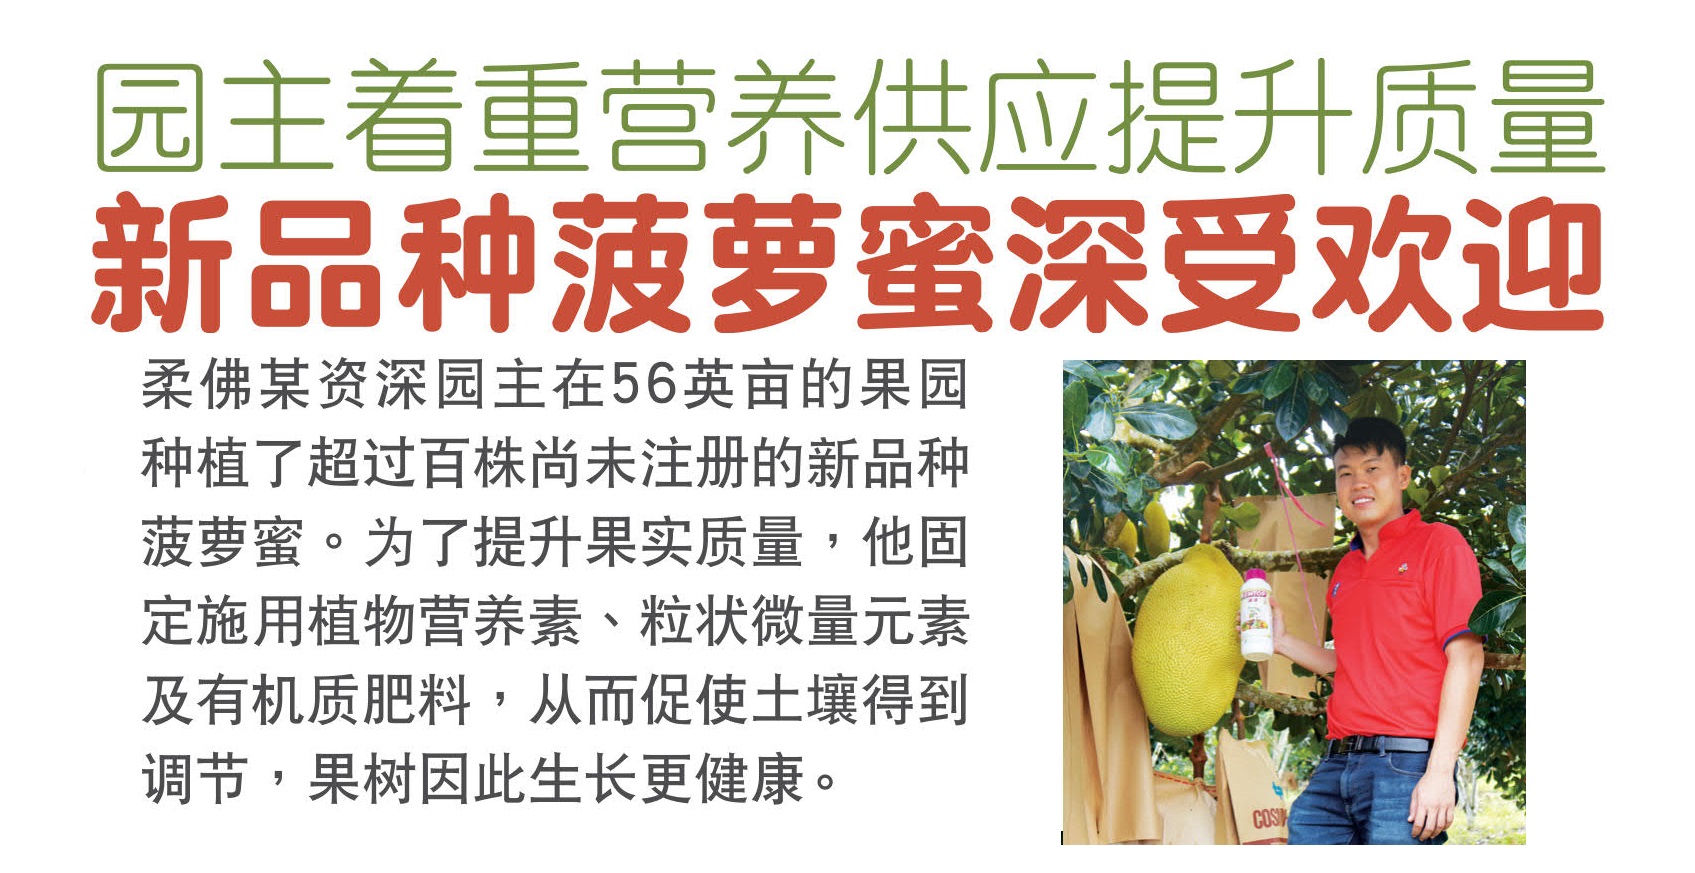 园主着重营养供应提升质量 新品种菠萝蜜深受市场欢迎 - 农牧世界